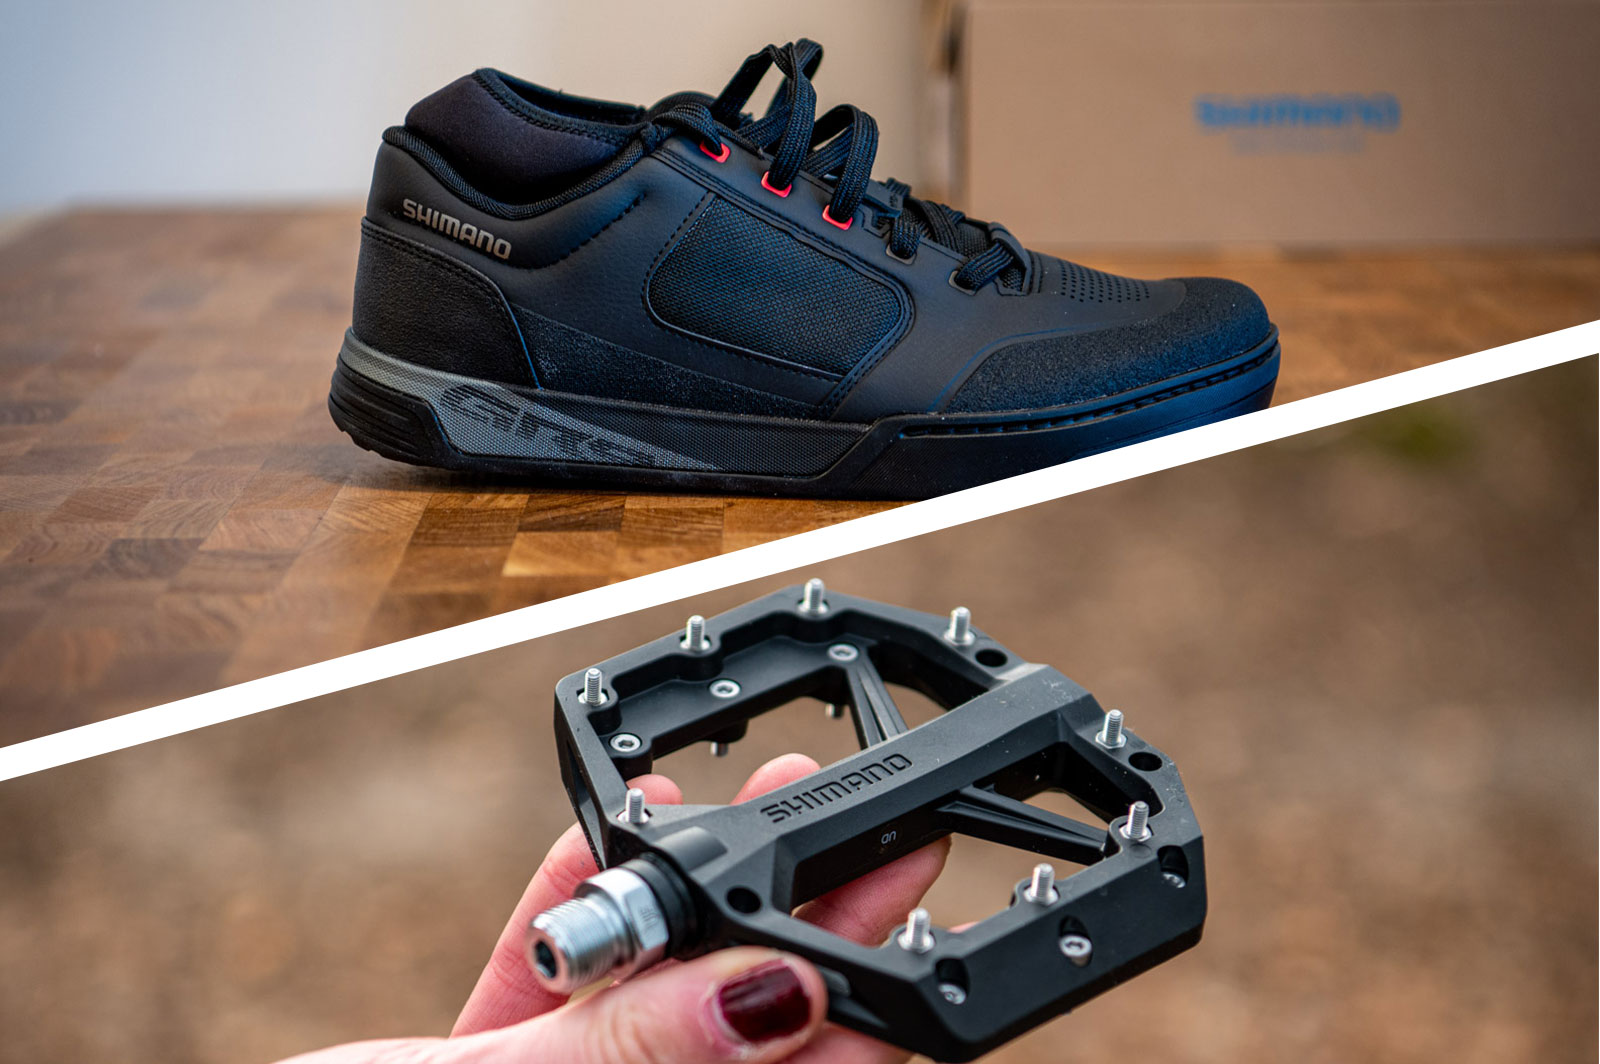 Neerwaarts verdacht Dinkarville Review: Shimano GR9 schoenen met GR400 flat pedal - topmodel uit gravity  serie - MTBblog.nl